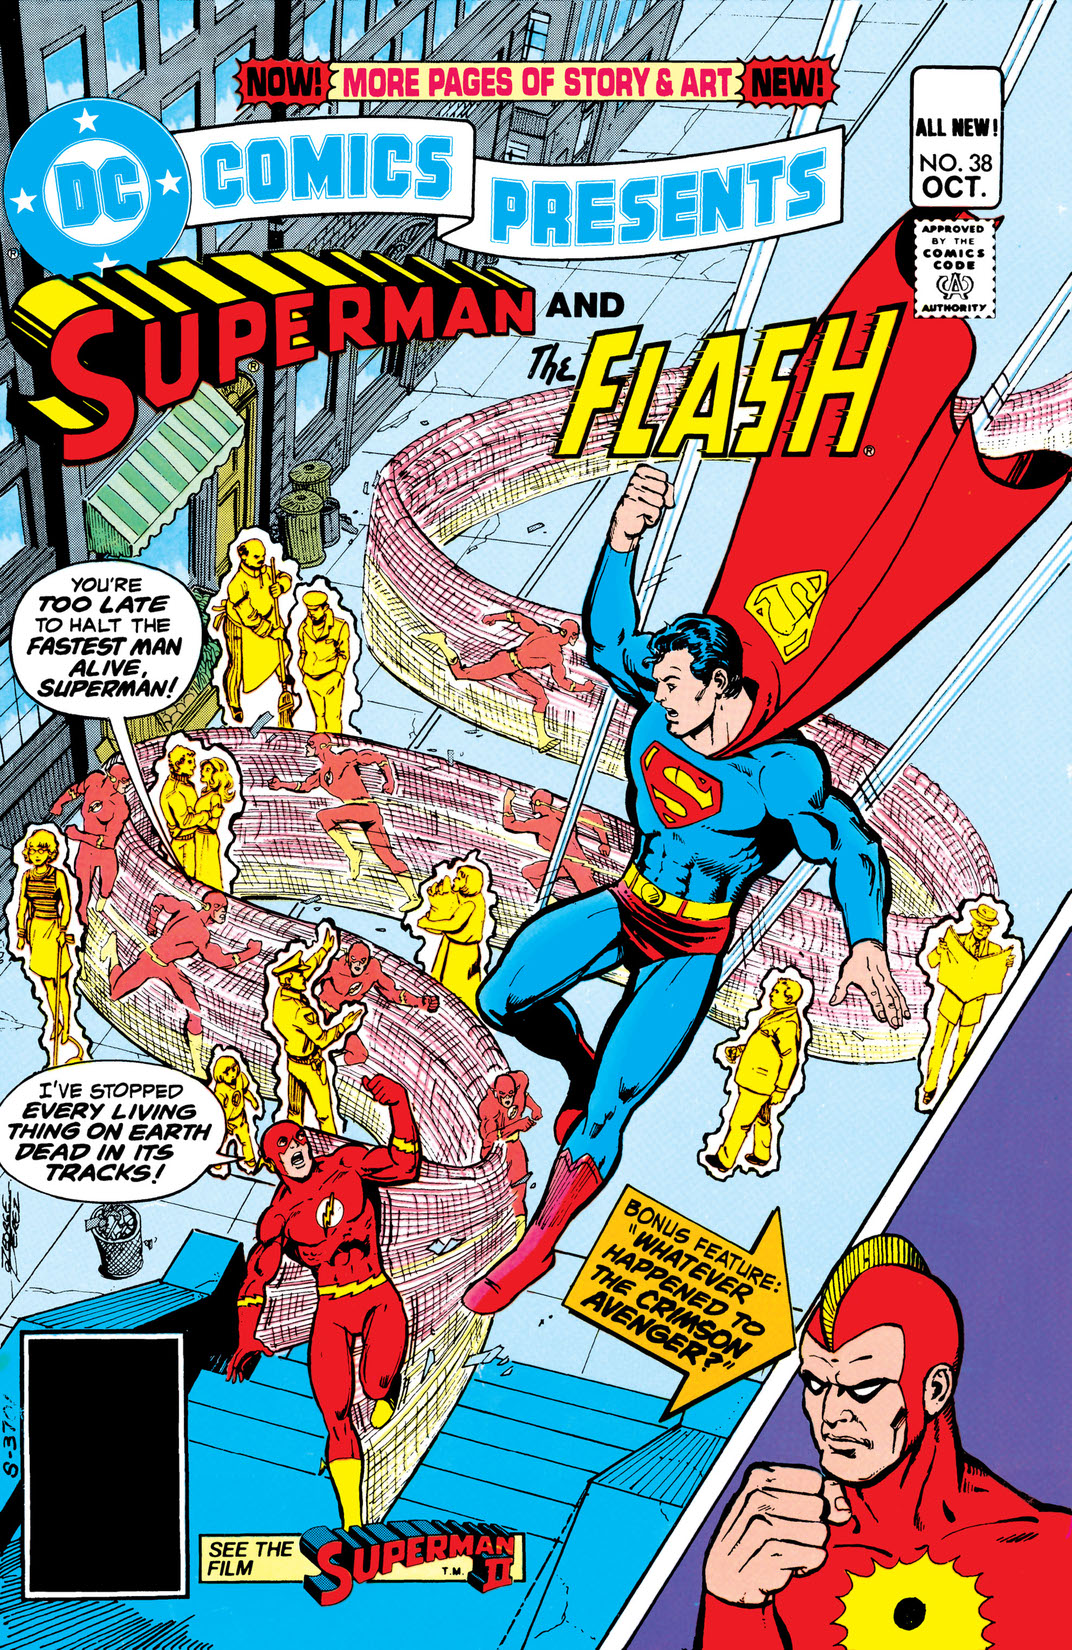 DC Comics Presents (1978-1986) #38 preview images